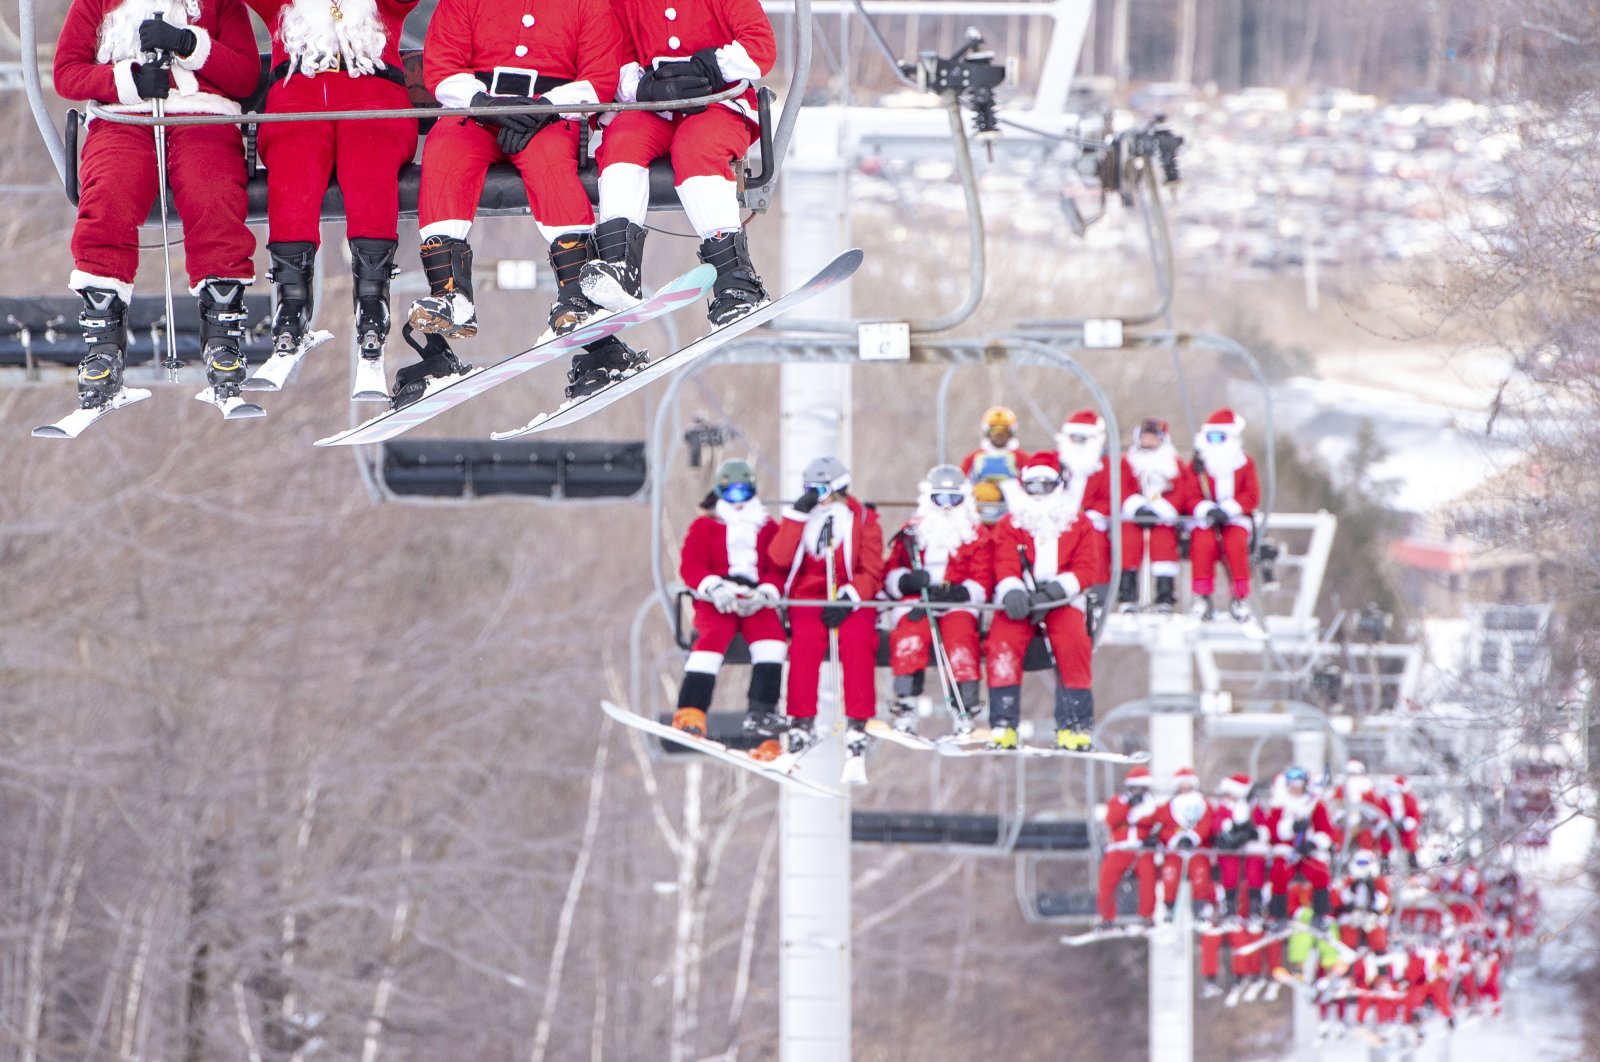 Lebih dari 200 Santa bermain ski di resor AS untuk mengumpulkan uang untuk amal